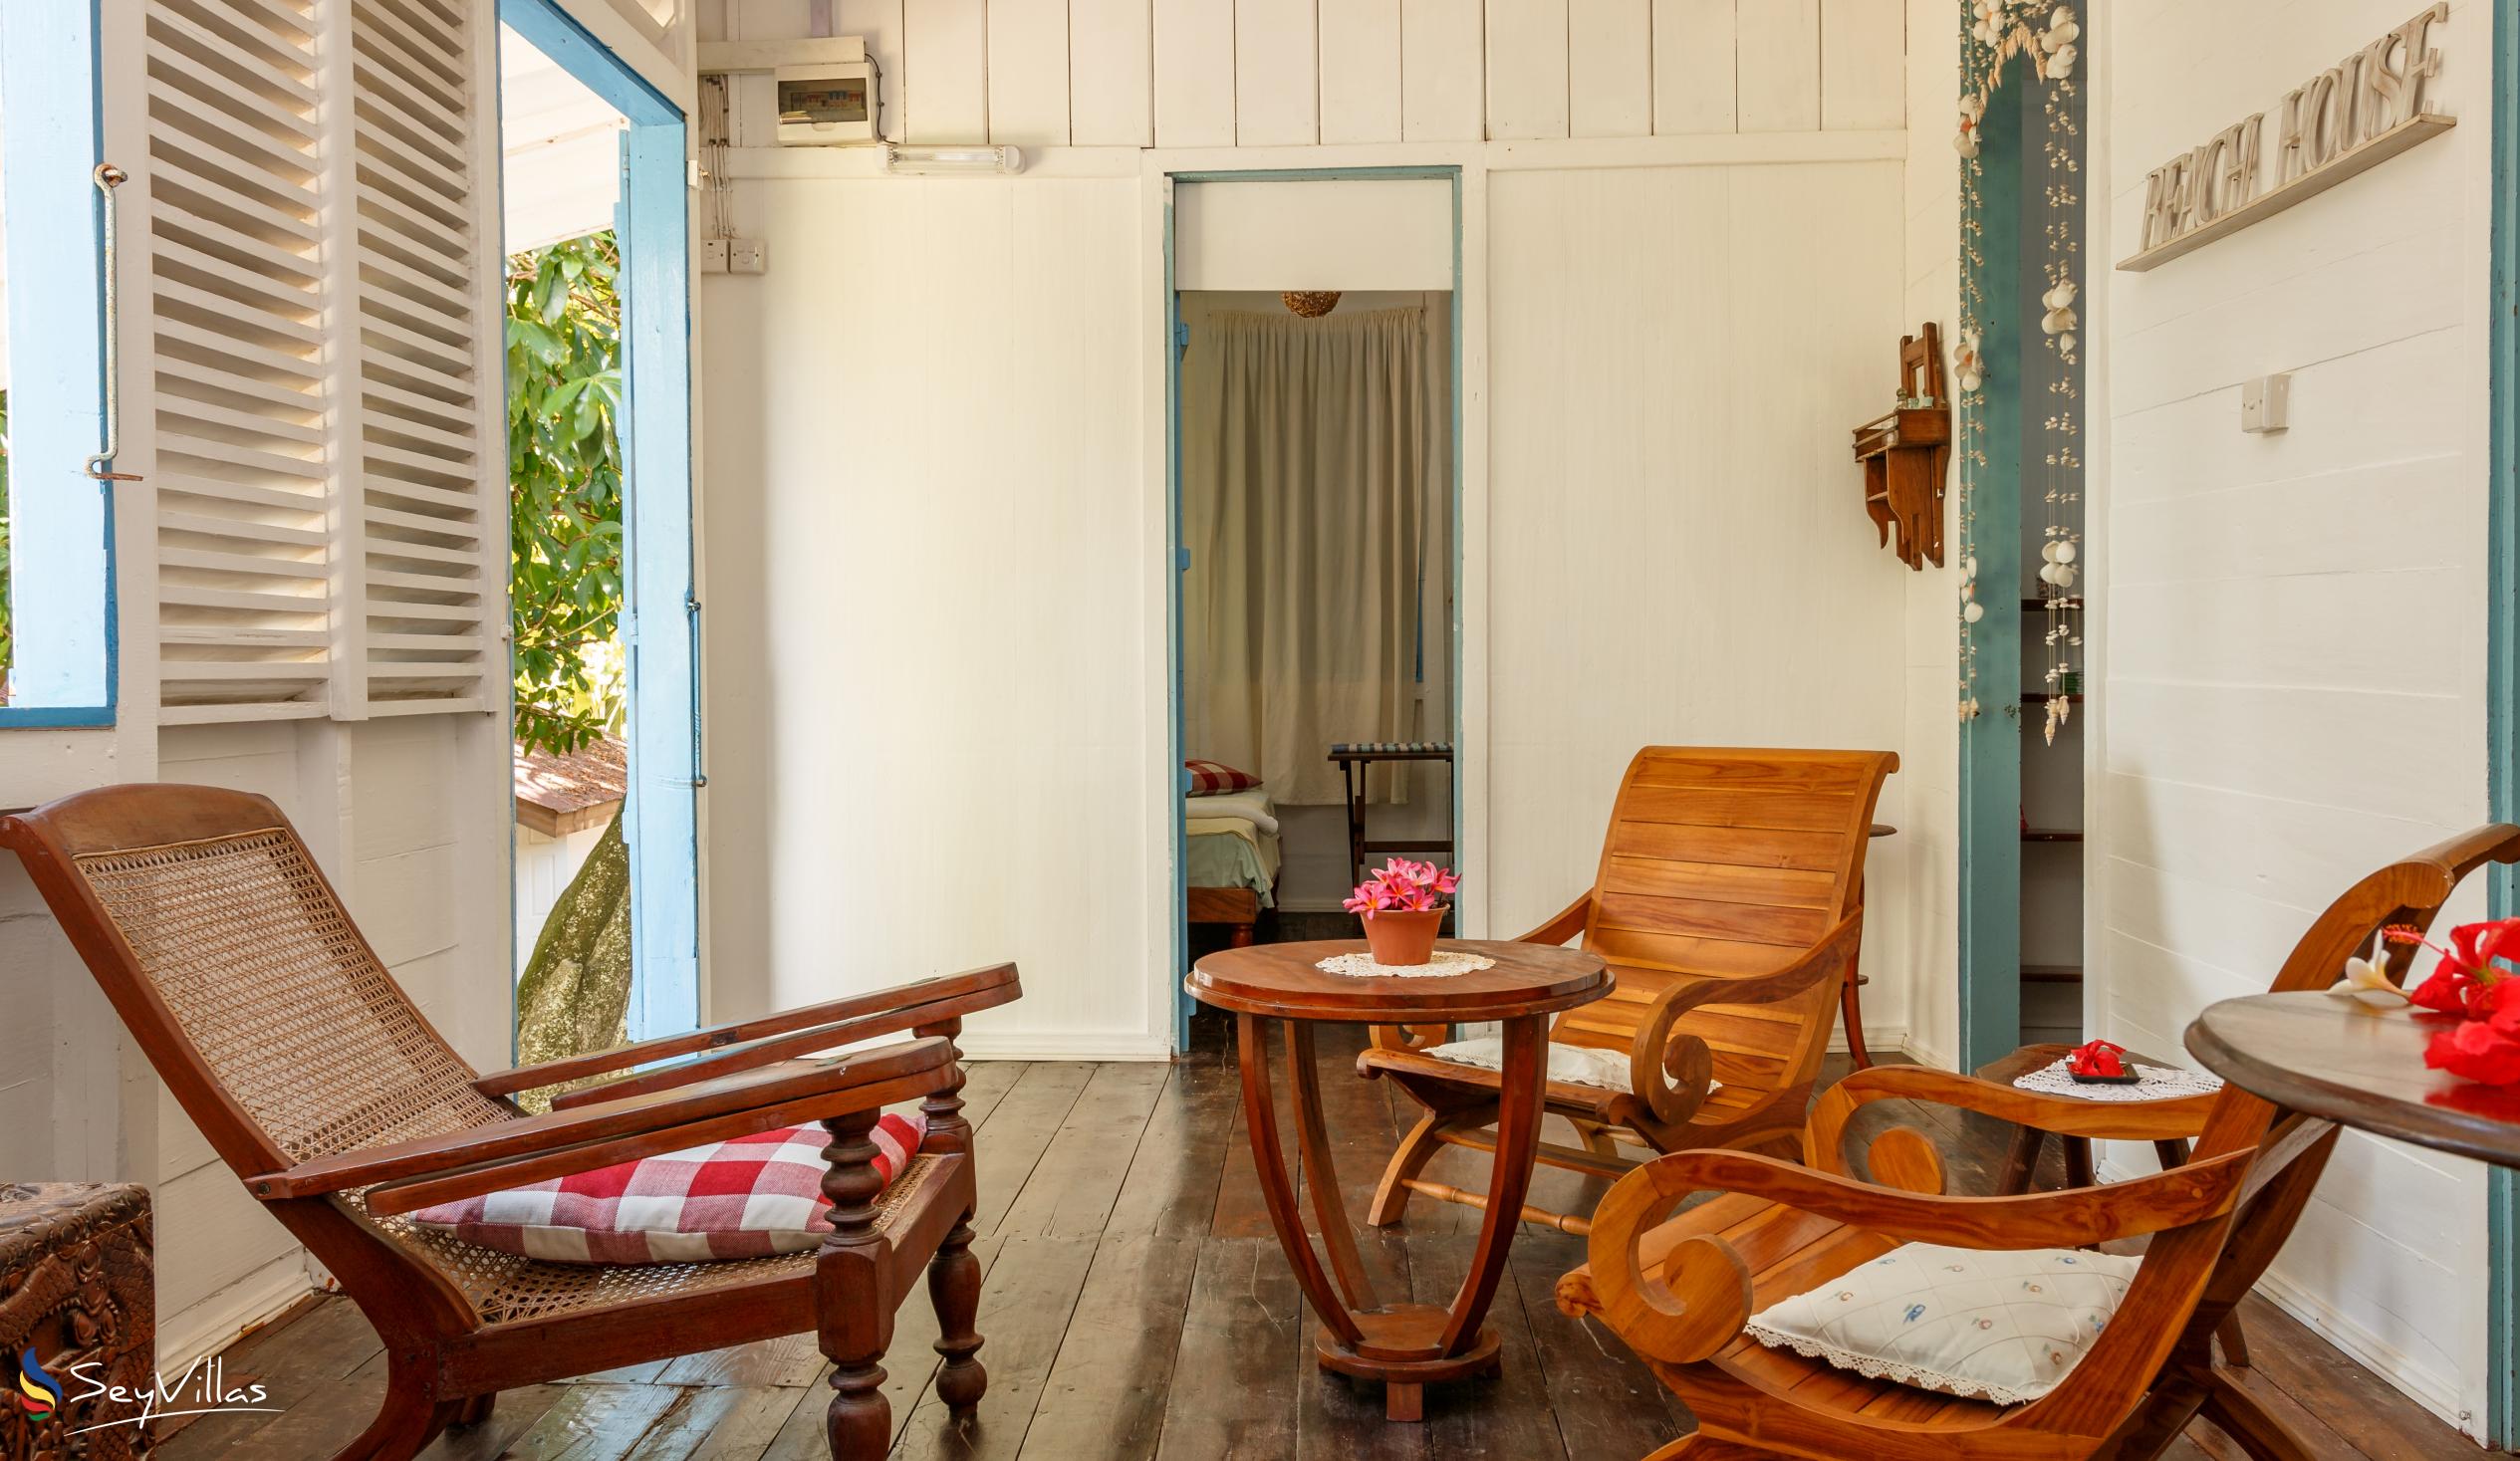 Foto 45: The Beach House (Chateau Martha) - Maison de vacances avec 2 chambres à coucher - Mahé (Seychelles)